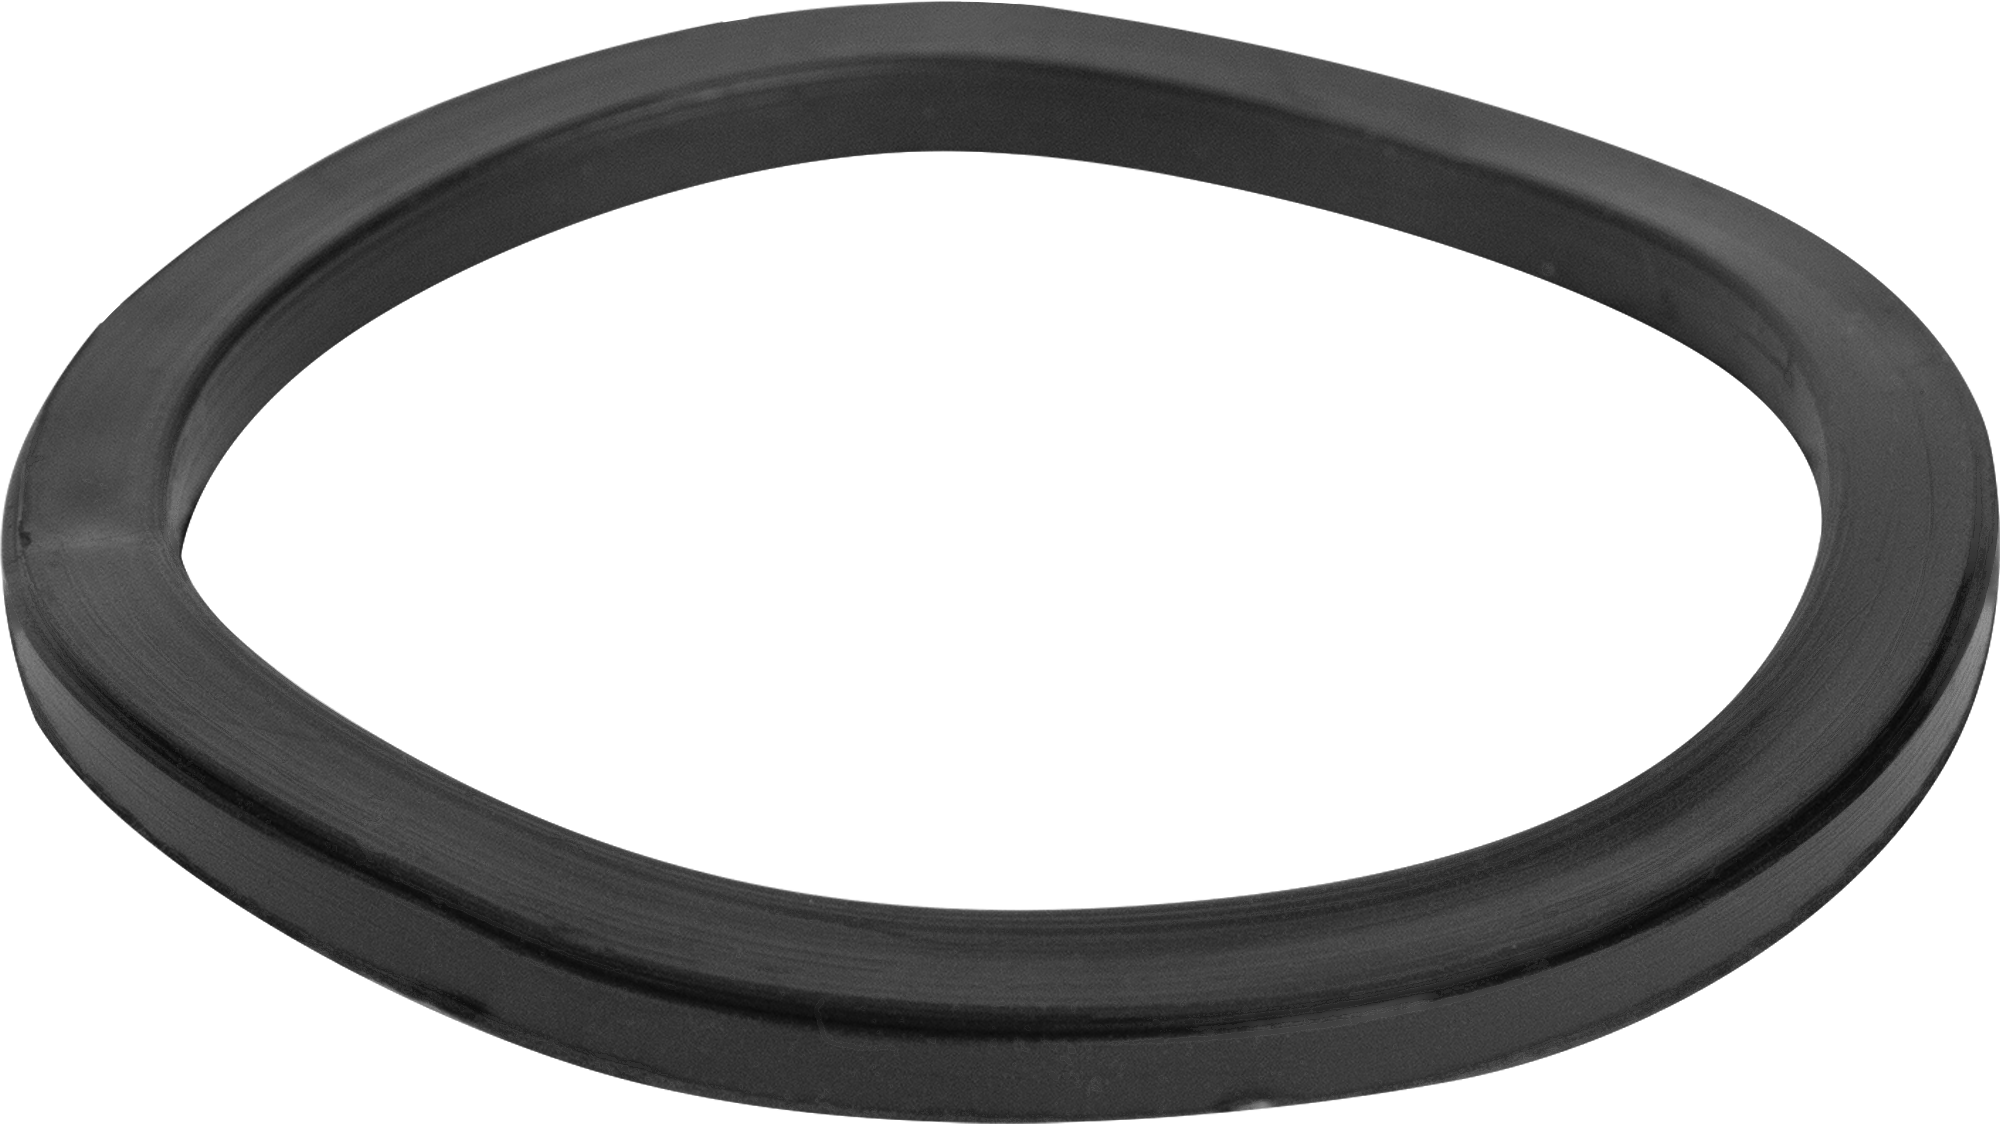  кольцо Симтек для сифона 55x65x4 мм ️  по цене 5.1 .